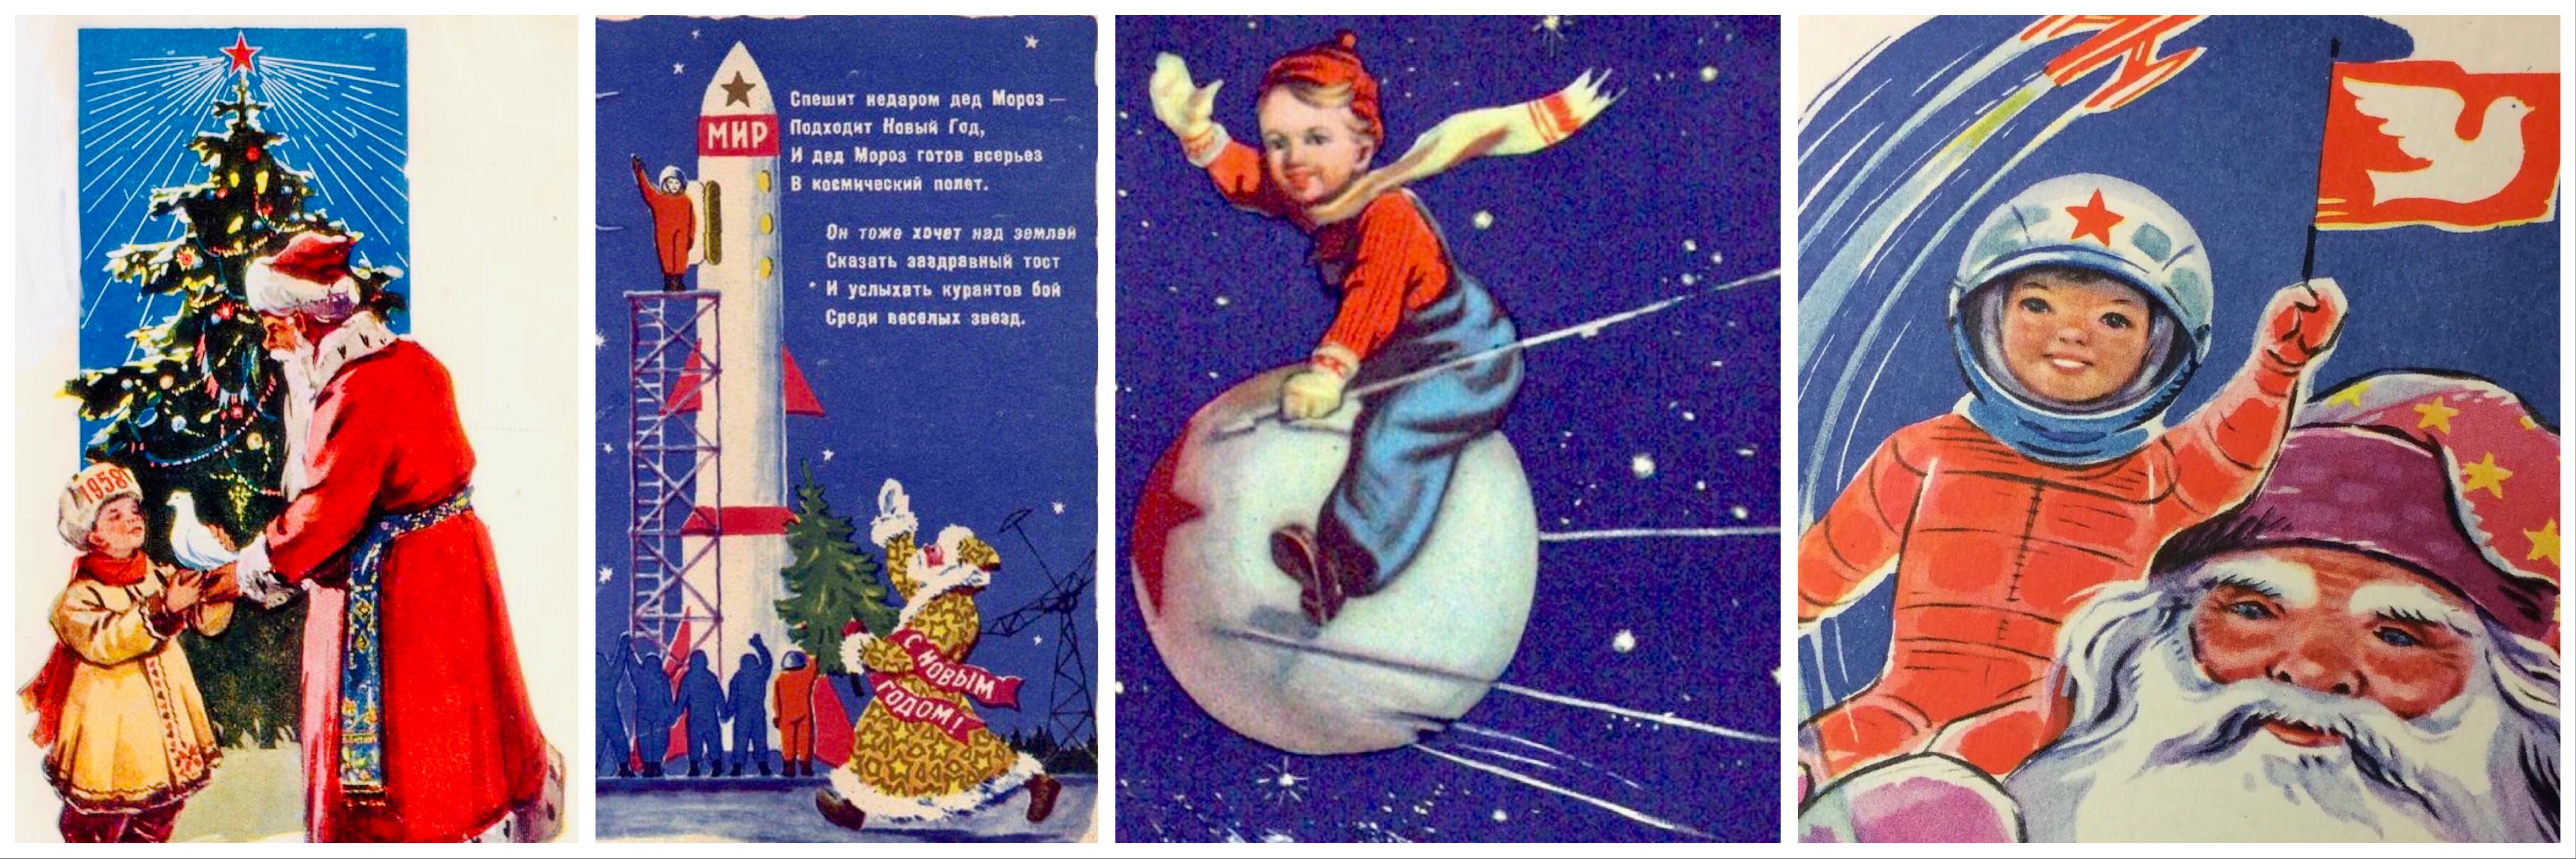 A Vörös Télapó nemcsak modellje, tervezője is volt annak a kampánynak, ami óvódások és kisiskolások körében népszerűsítette az űrhajózást, mint karrierlehetőséget. Az ennél idősebbek tudták, hogy életükben nem engednék őket hordozórakéta közelébe, de a fotózásra hívott gyerekek még a szputnyikformájú gumilabdának is örültek, mert addig sose láttak akkorát, és most még hozzá is érhettek.